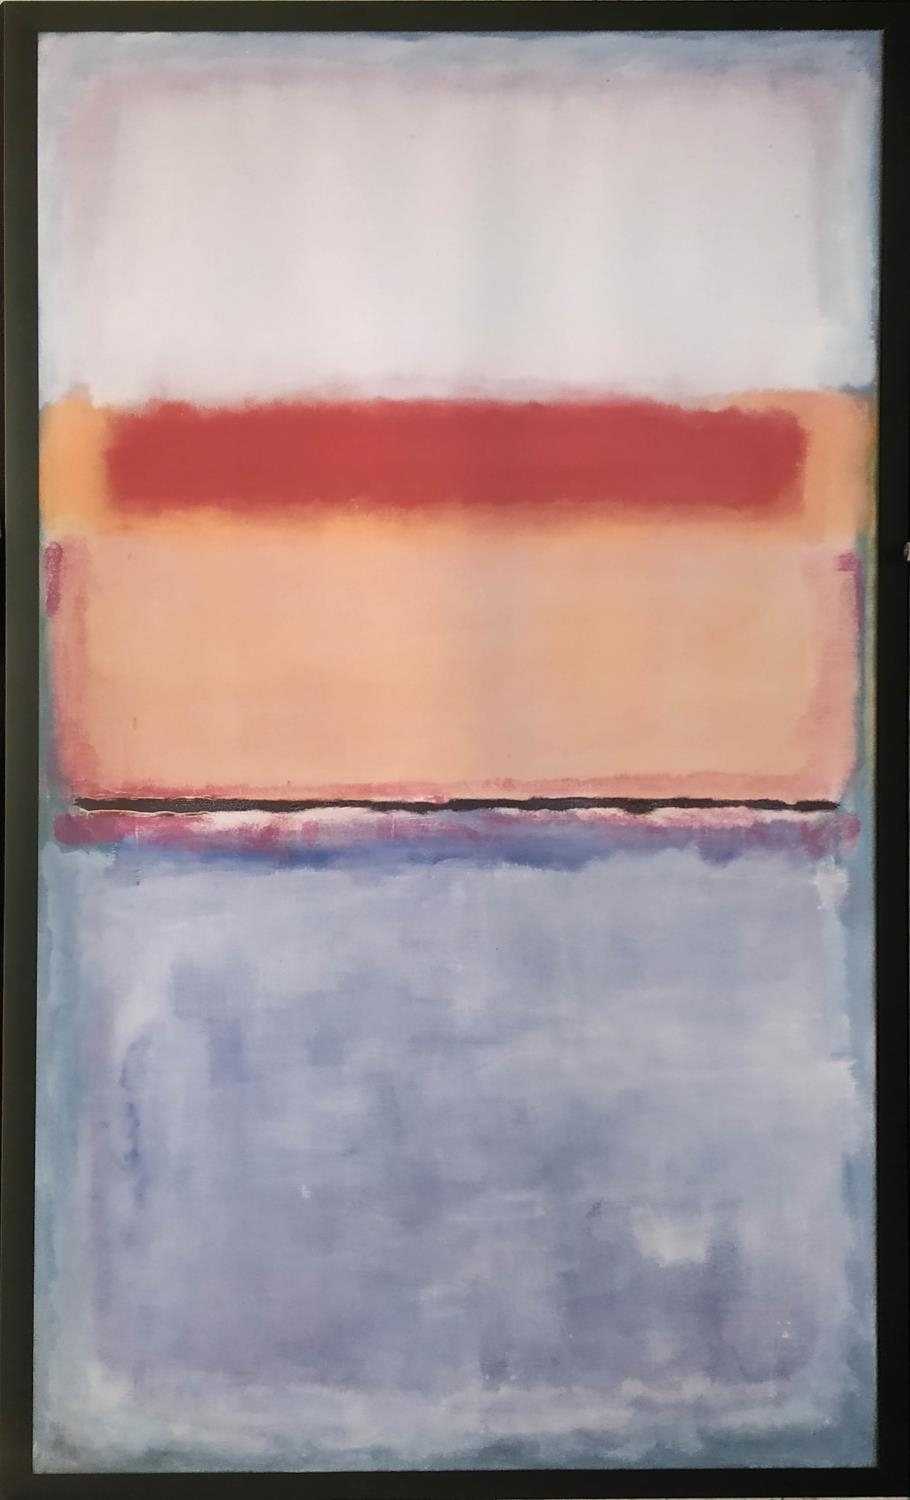 'Abstract - 1952' by Mark Rothko, 1952